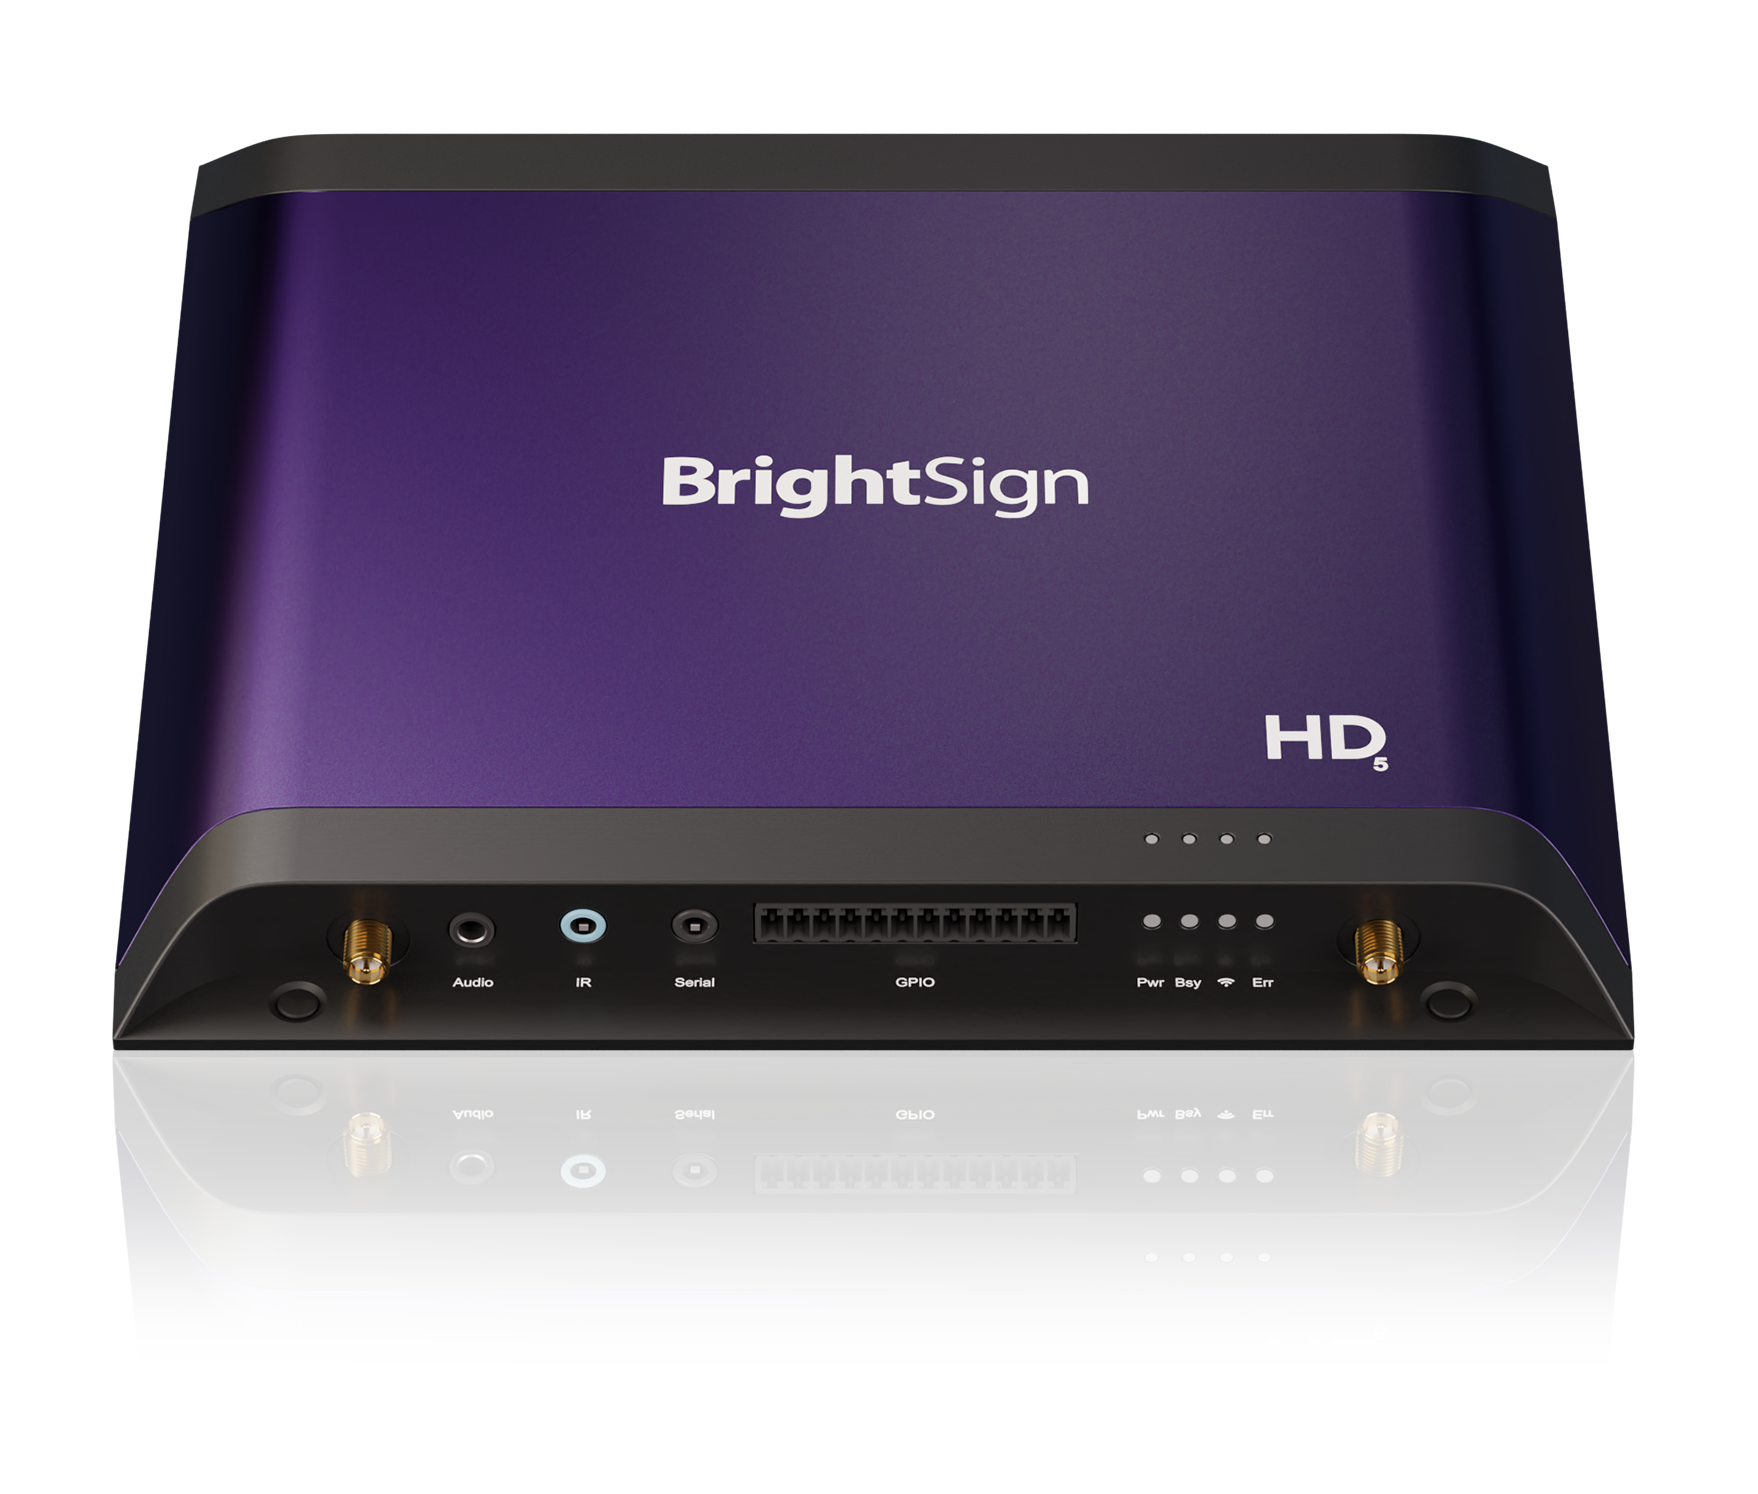 Produktbild des Digital Signage Players BrightSign XC5 aus der Serie 5